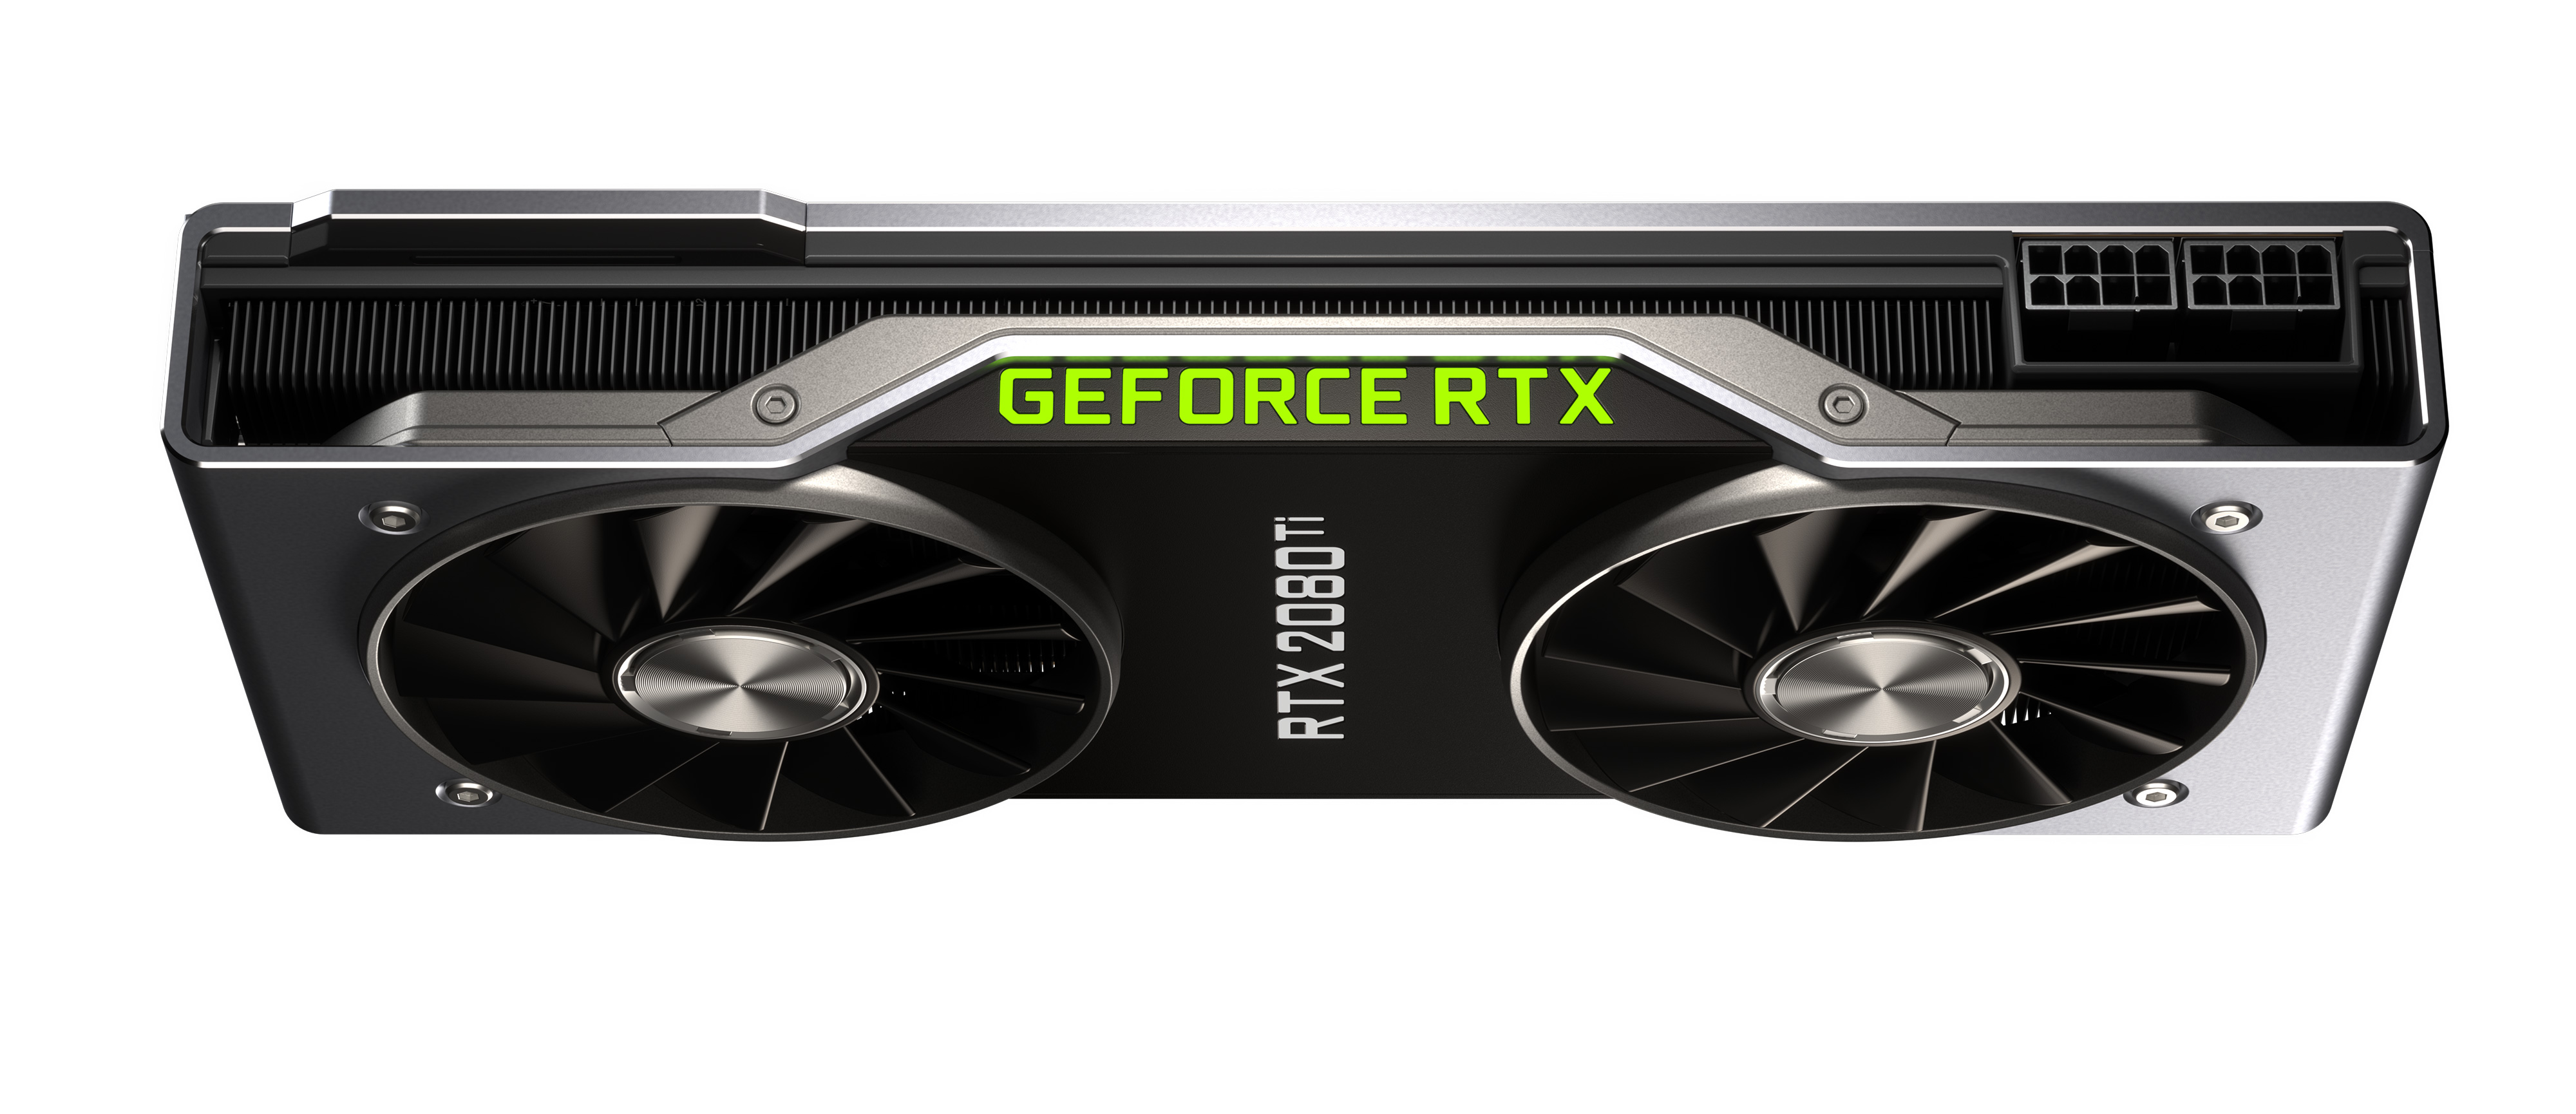 【新品未開封】NVIDIA GeForce RTX 2080 Ti FE